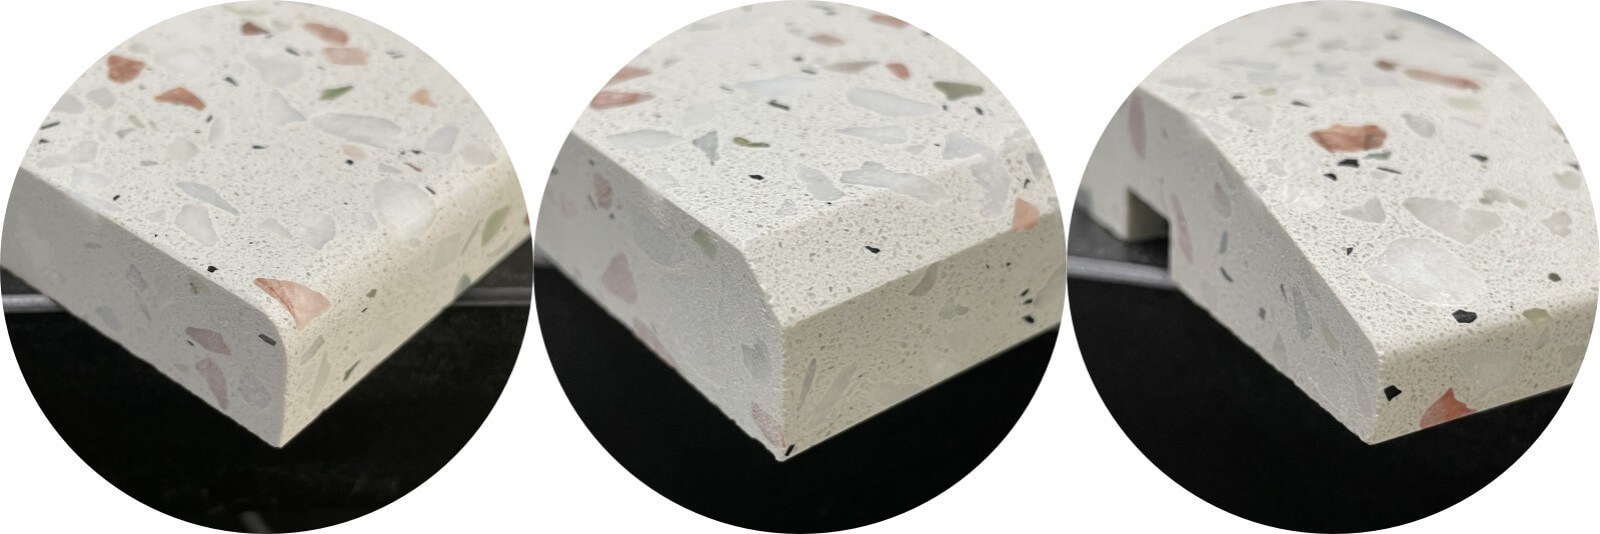 Quartz Stone, Marble & Grainte Countertops Fabrication For Hotel Condo Project 3